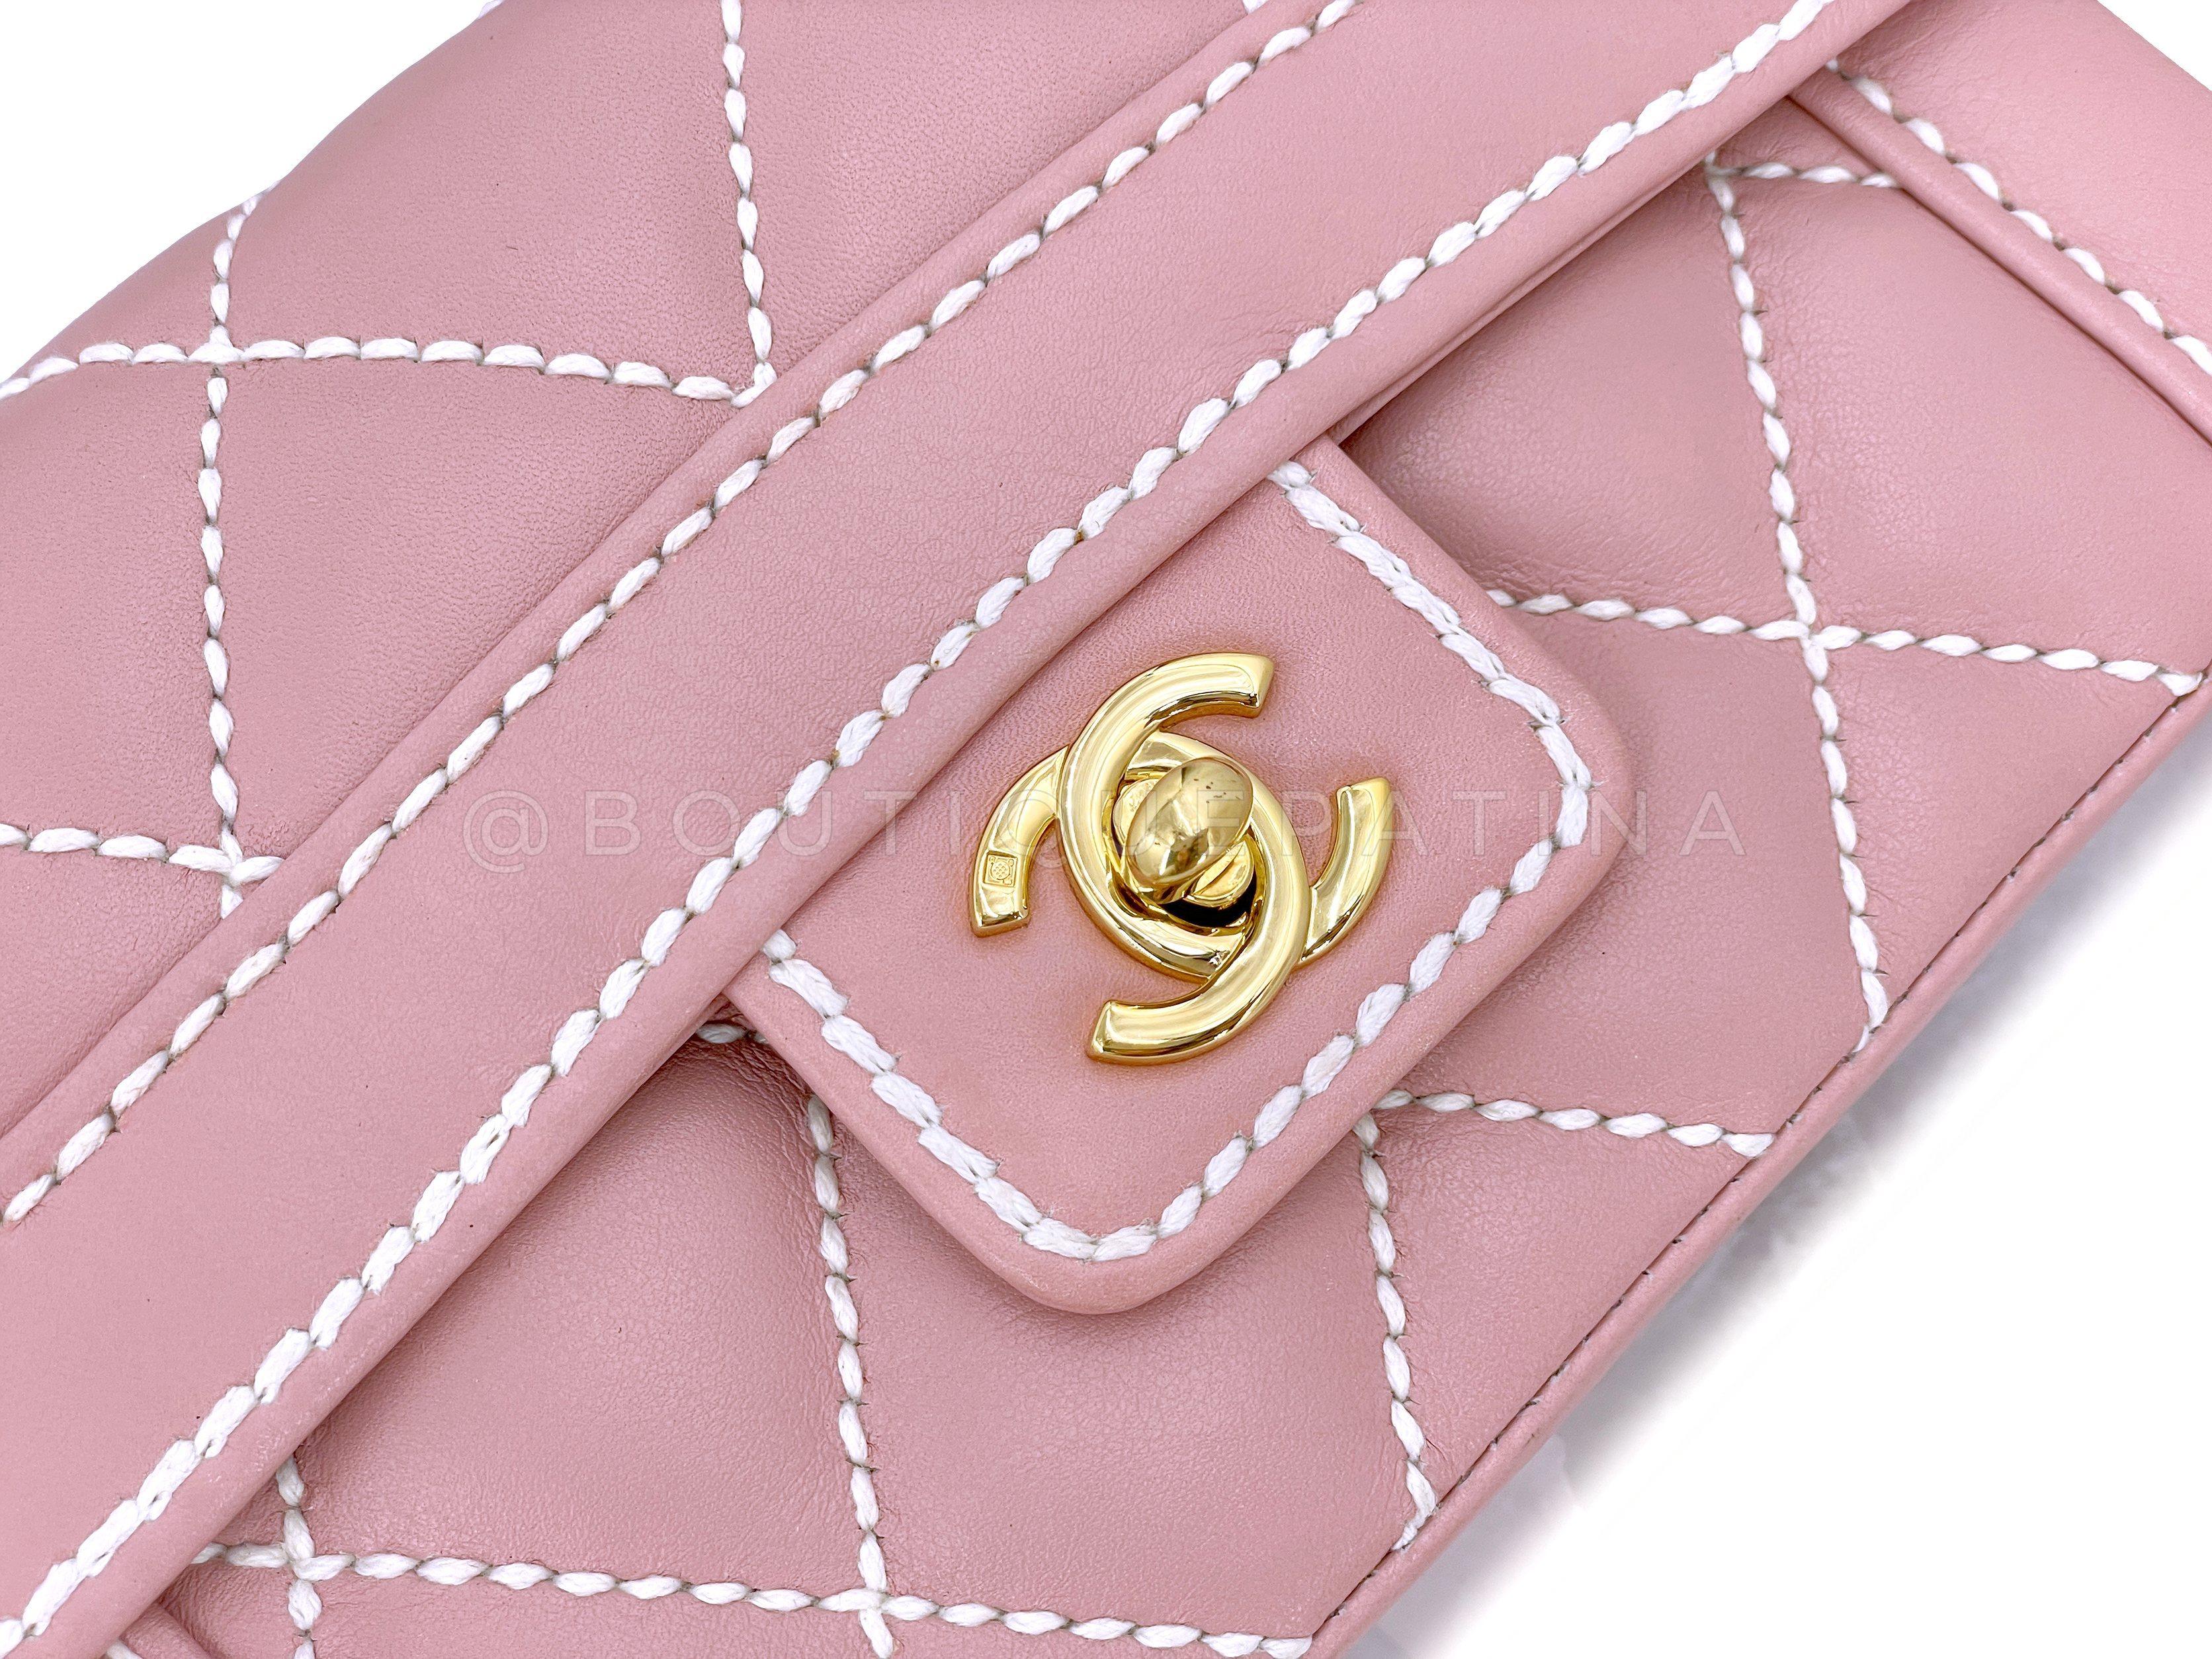 Rare Chanel Mauve Pink Wild Stitch Surpique Baby Flap Bag 66463 For Sale 2